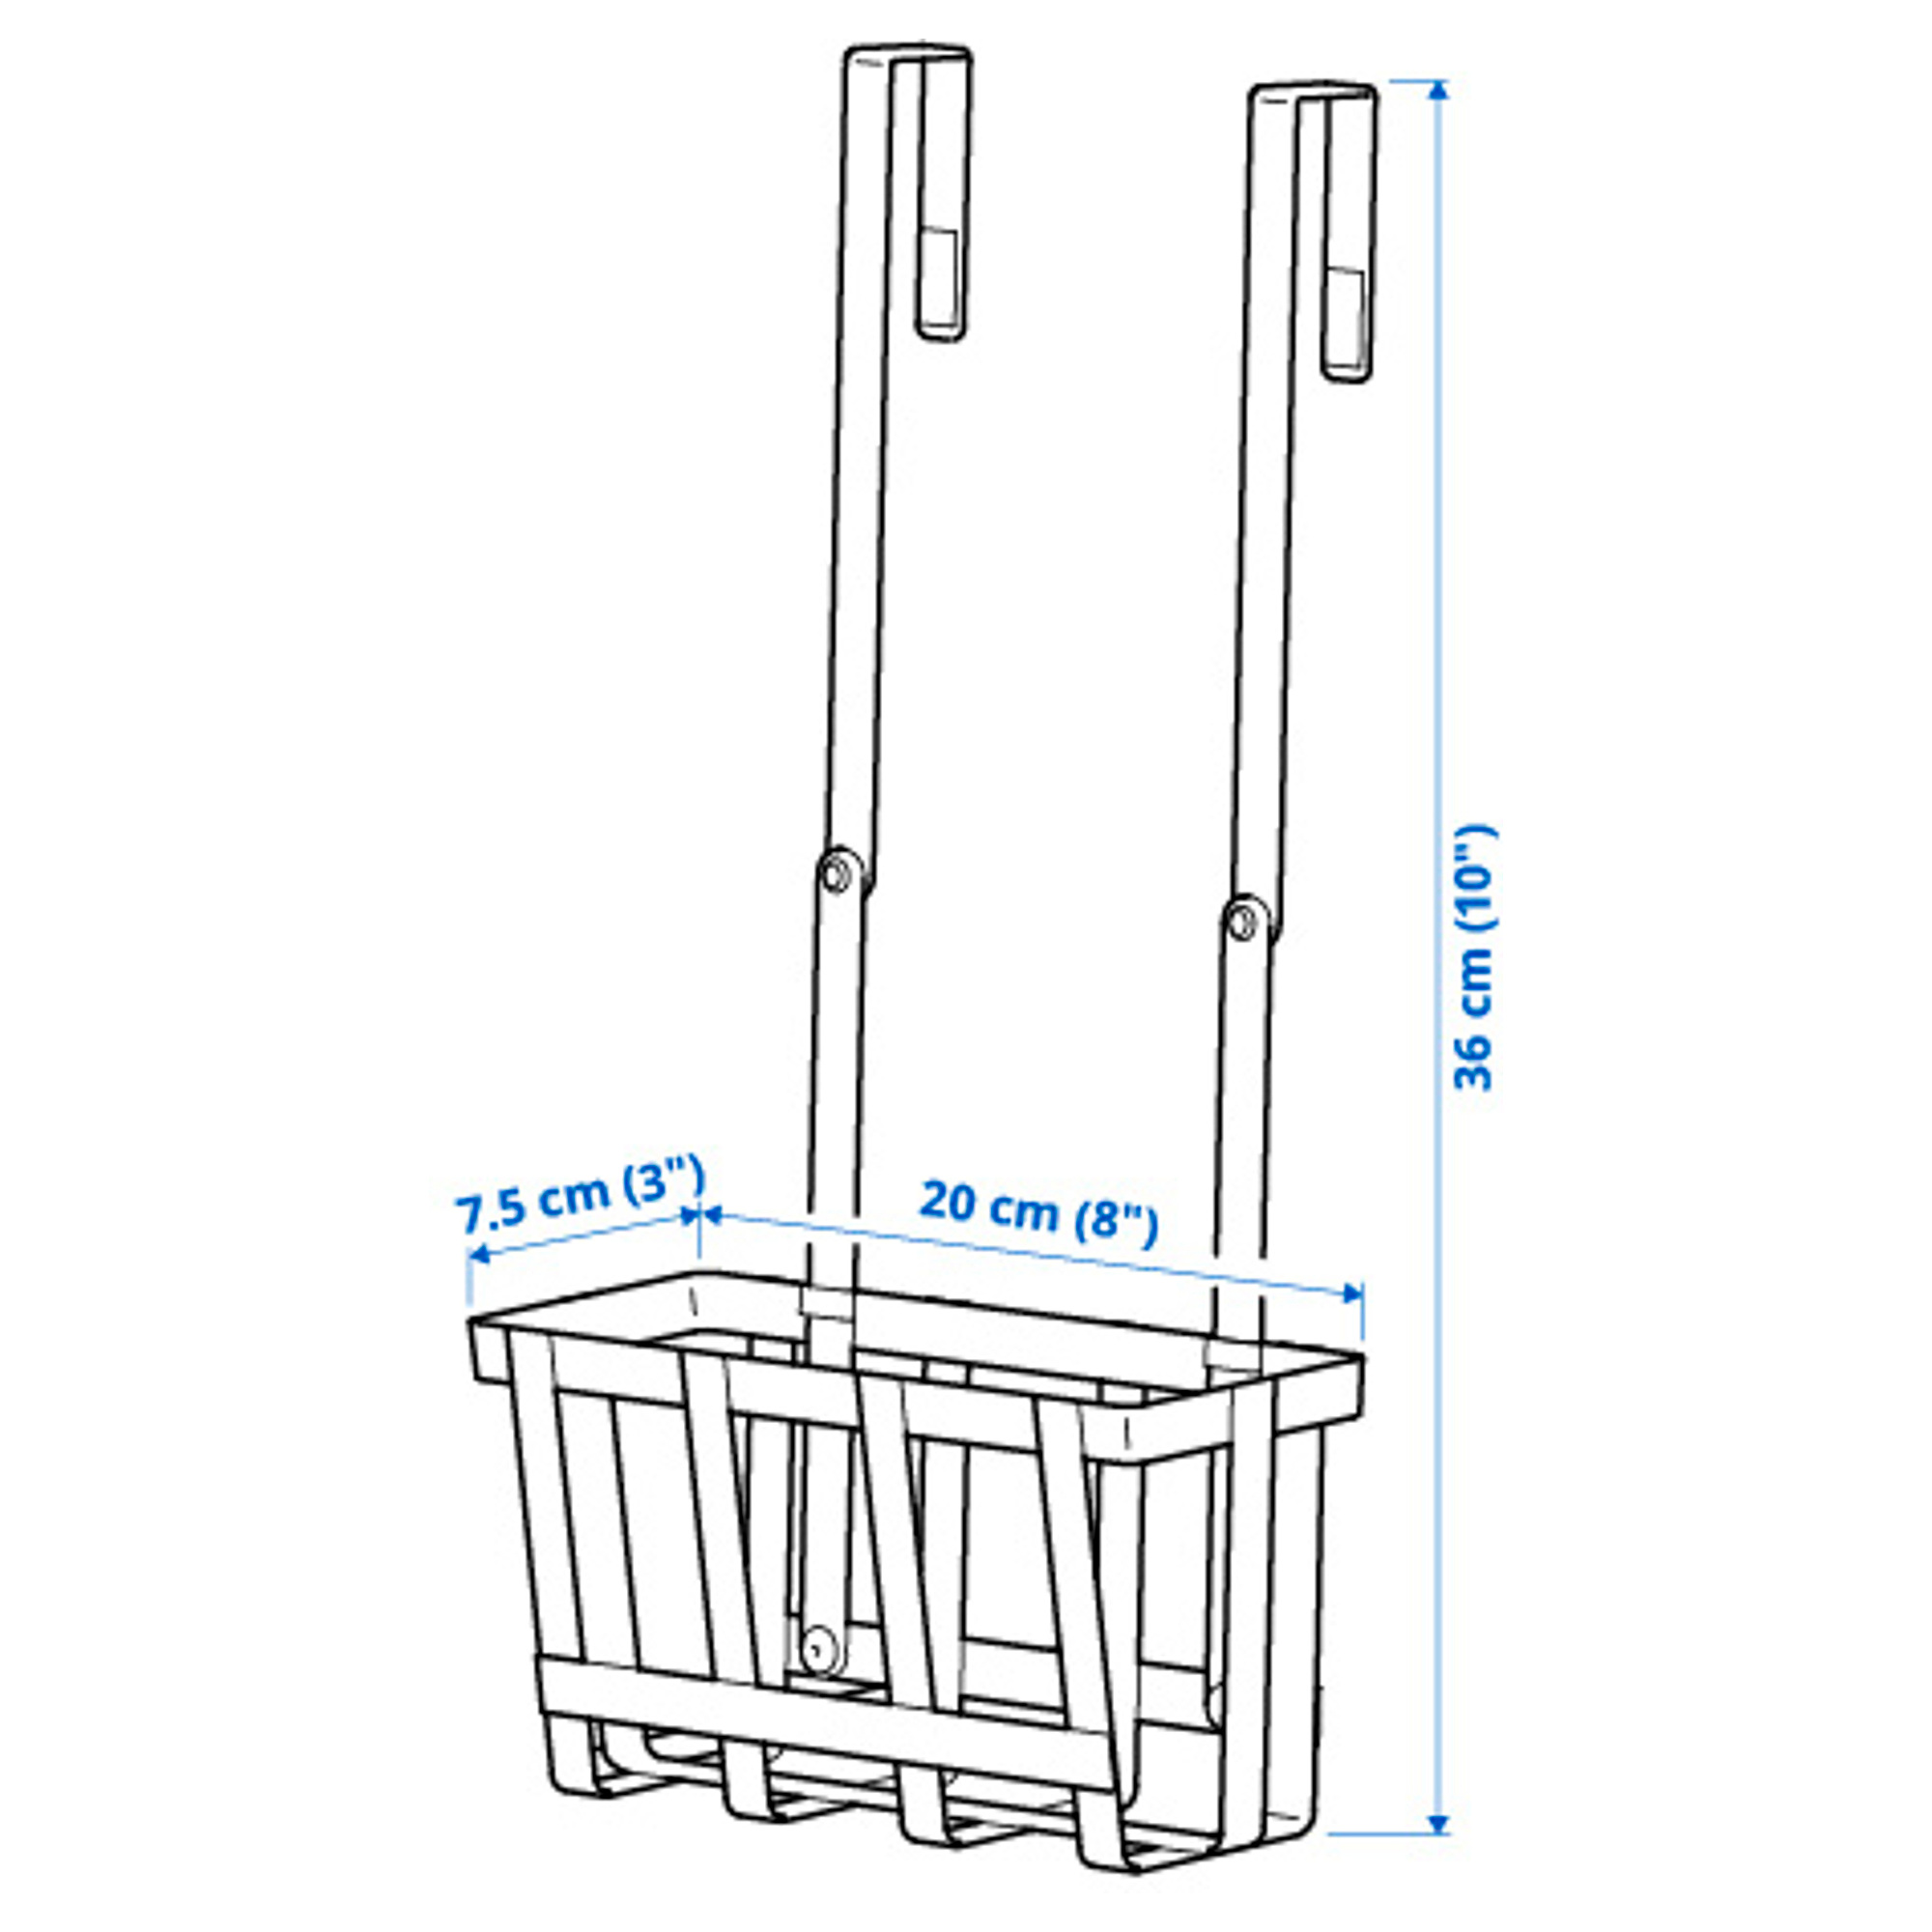 PÅLYCKE clip-on basket for cabinet door